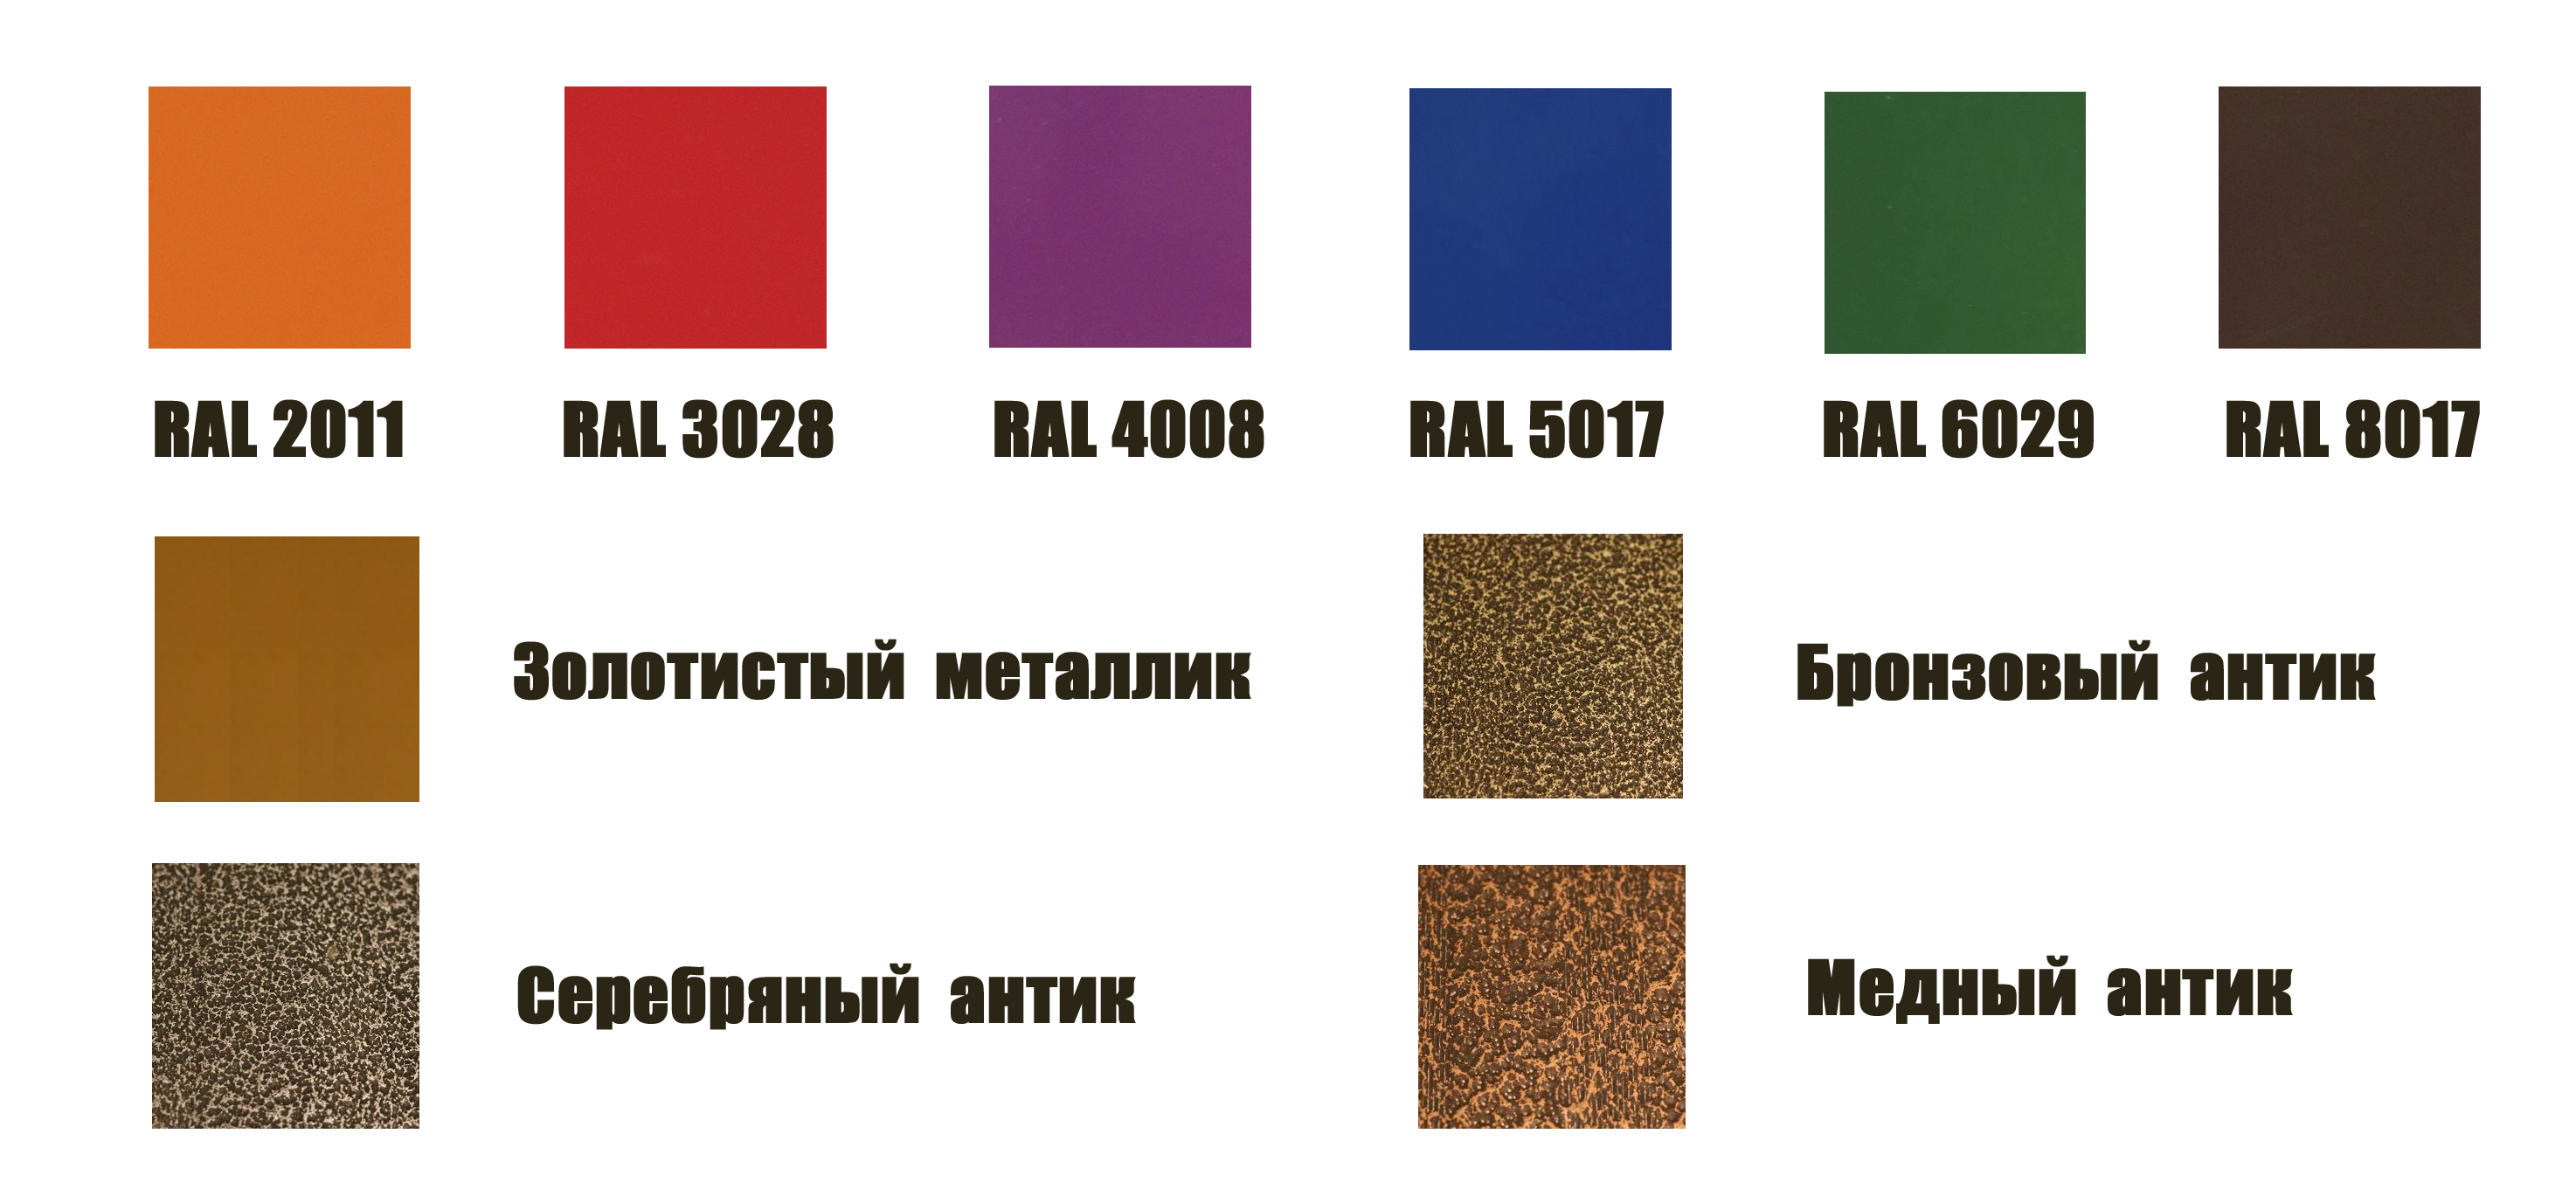 Каталог популярных цветов по RAL для теплиц из поликарбоната от компании Удачные Теплицы